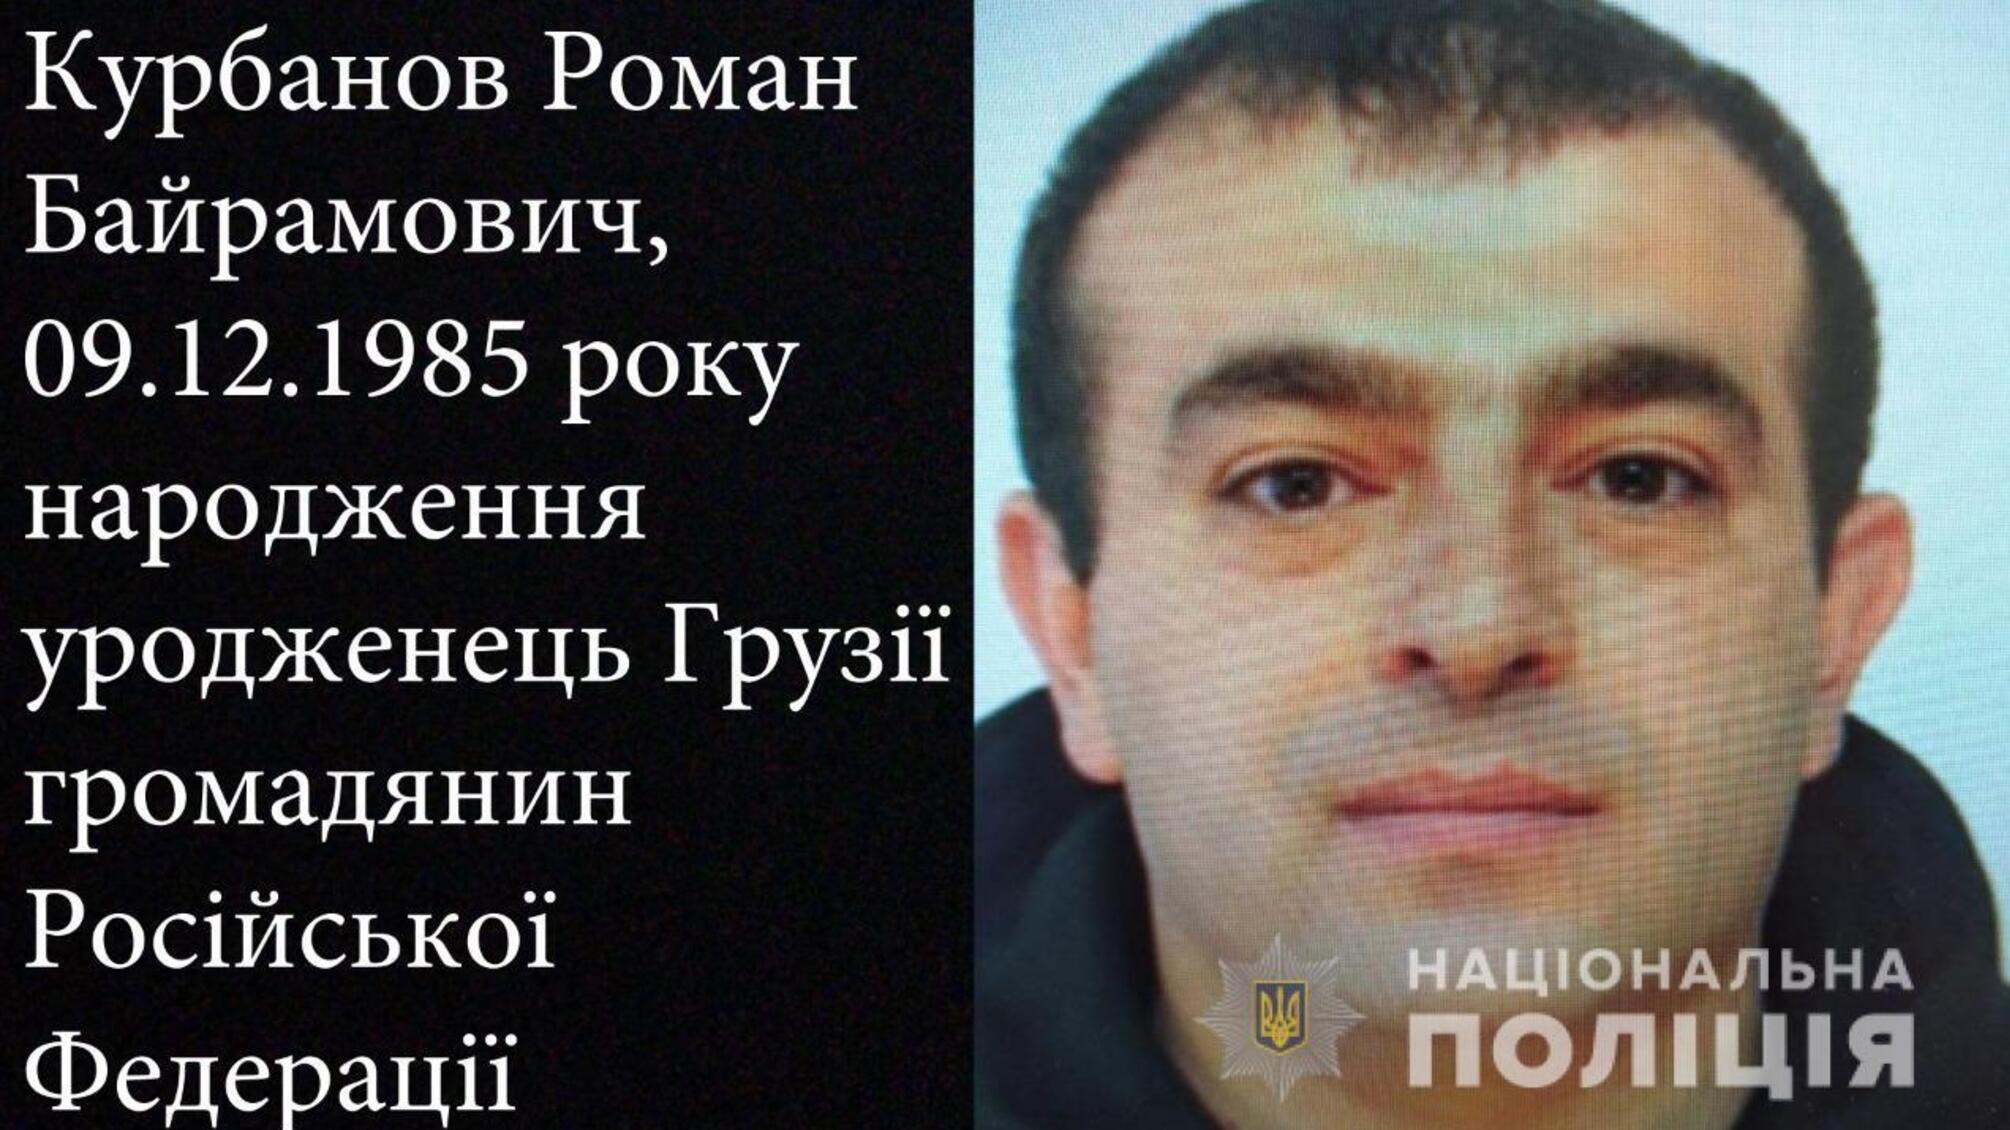 Поліцейські встановили особу другого зловмисника, причетного до замовного вбивства в Одесі